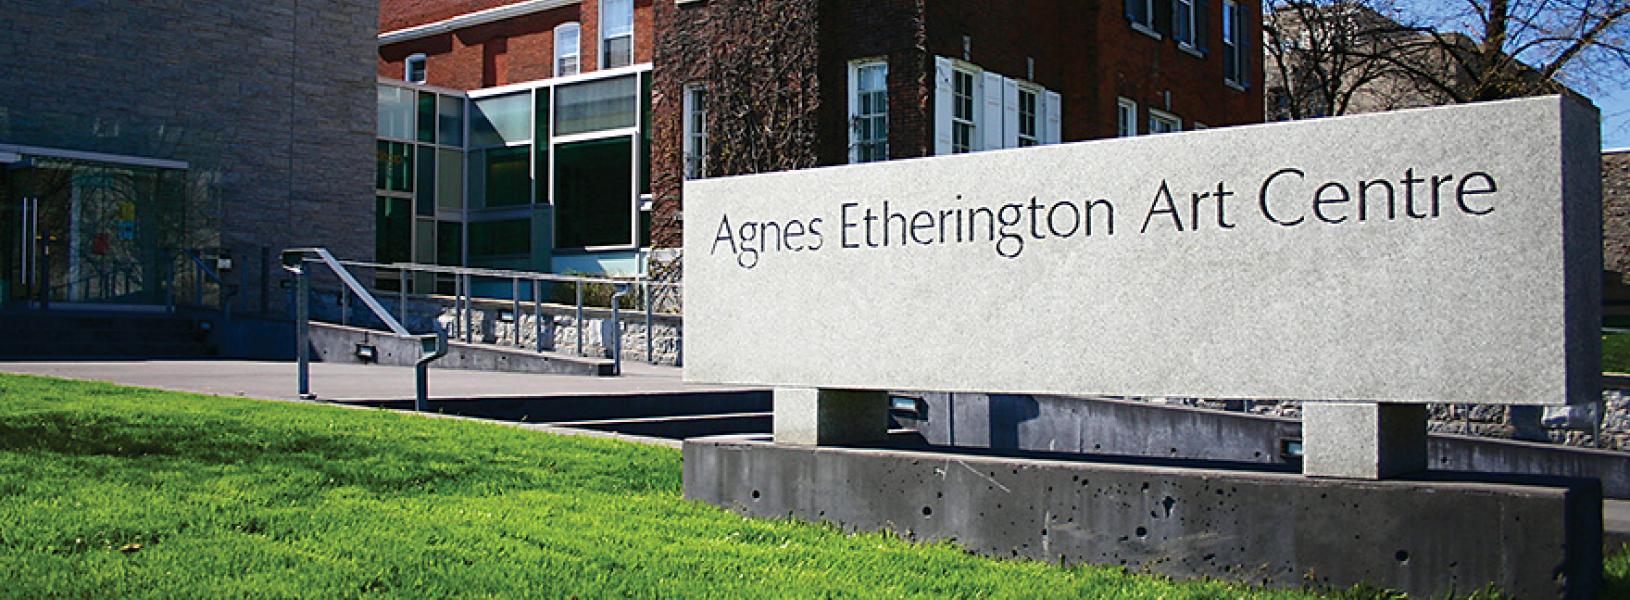 Exterior of the Agnes Etherington Art Centre